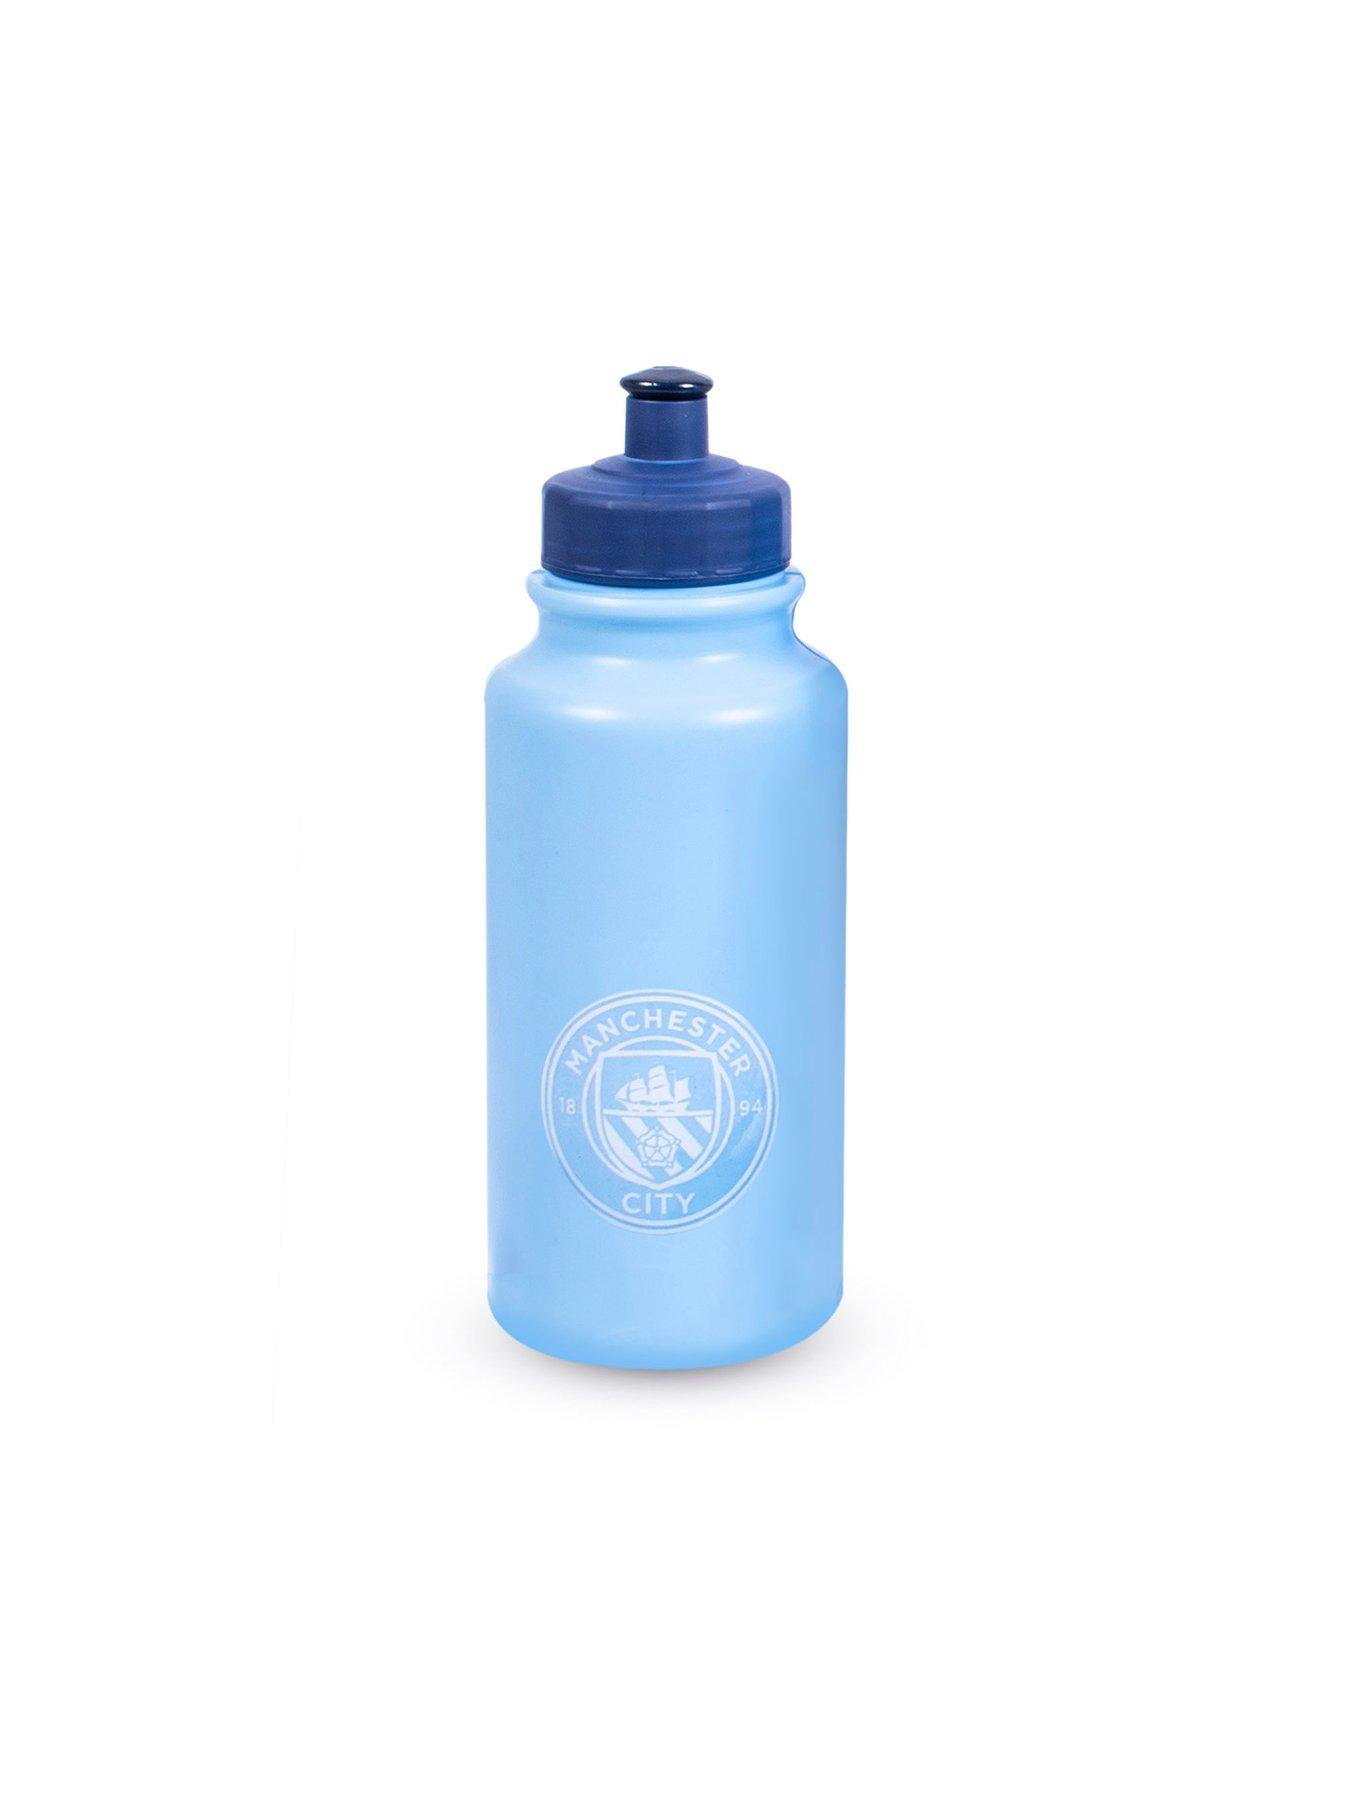 Manchester City Haaland Player 500ml Water Bottle